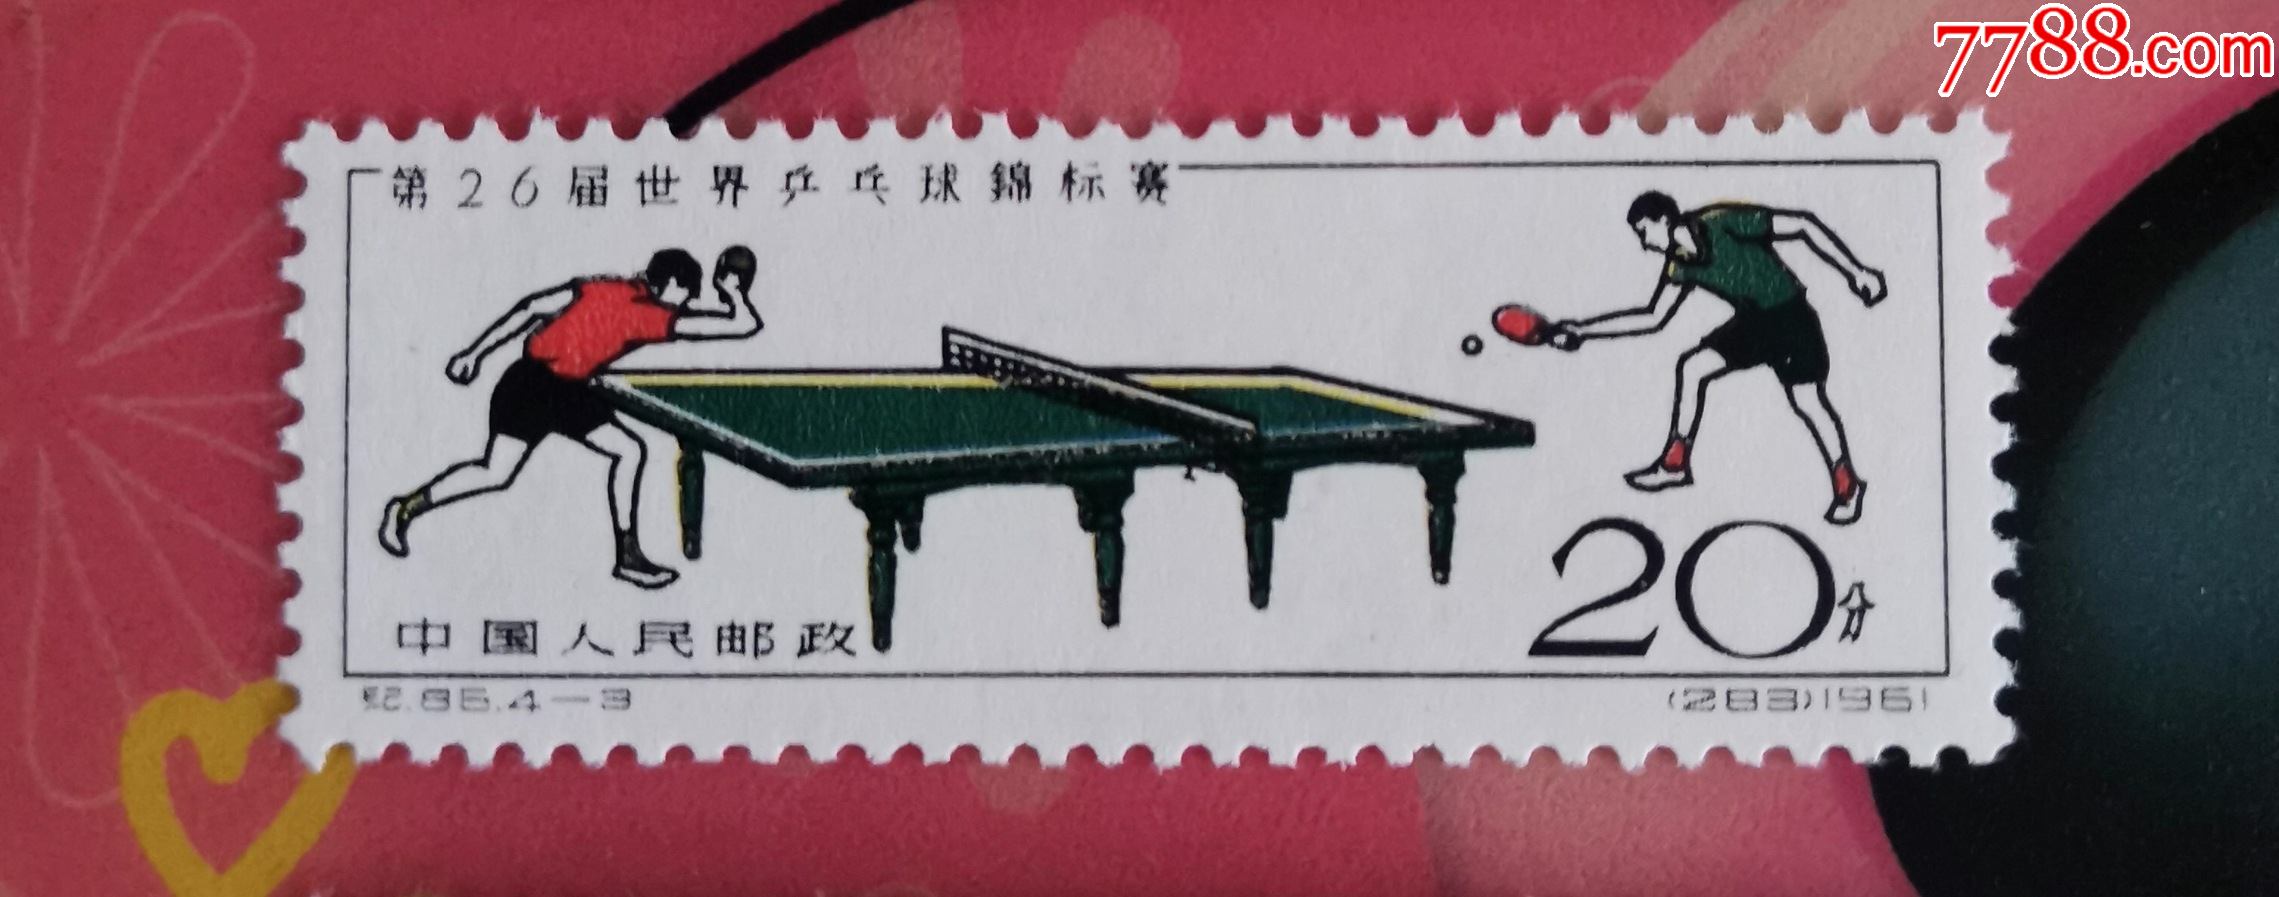 纪86第26届世界乒乓球锦标赛邮票43筋票新原胶上品